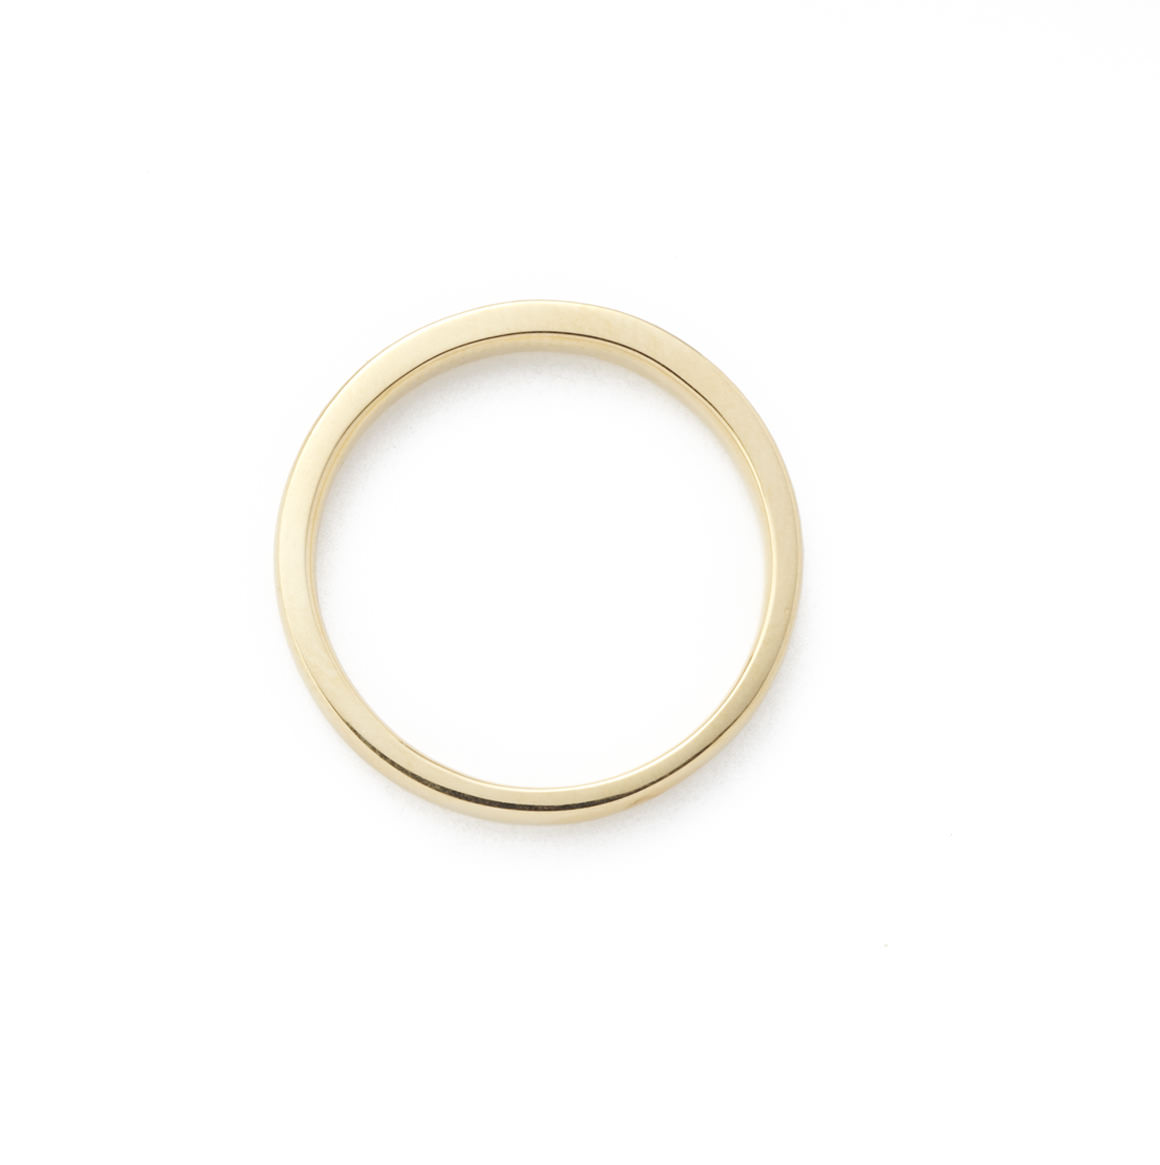 シンプルな仕上がりのMen's結婚指輪です。オリジナルゴールド含む計5種類のカラーからお選び頂けます。